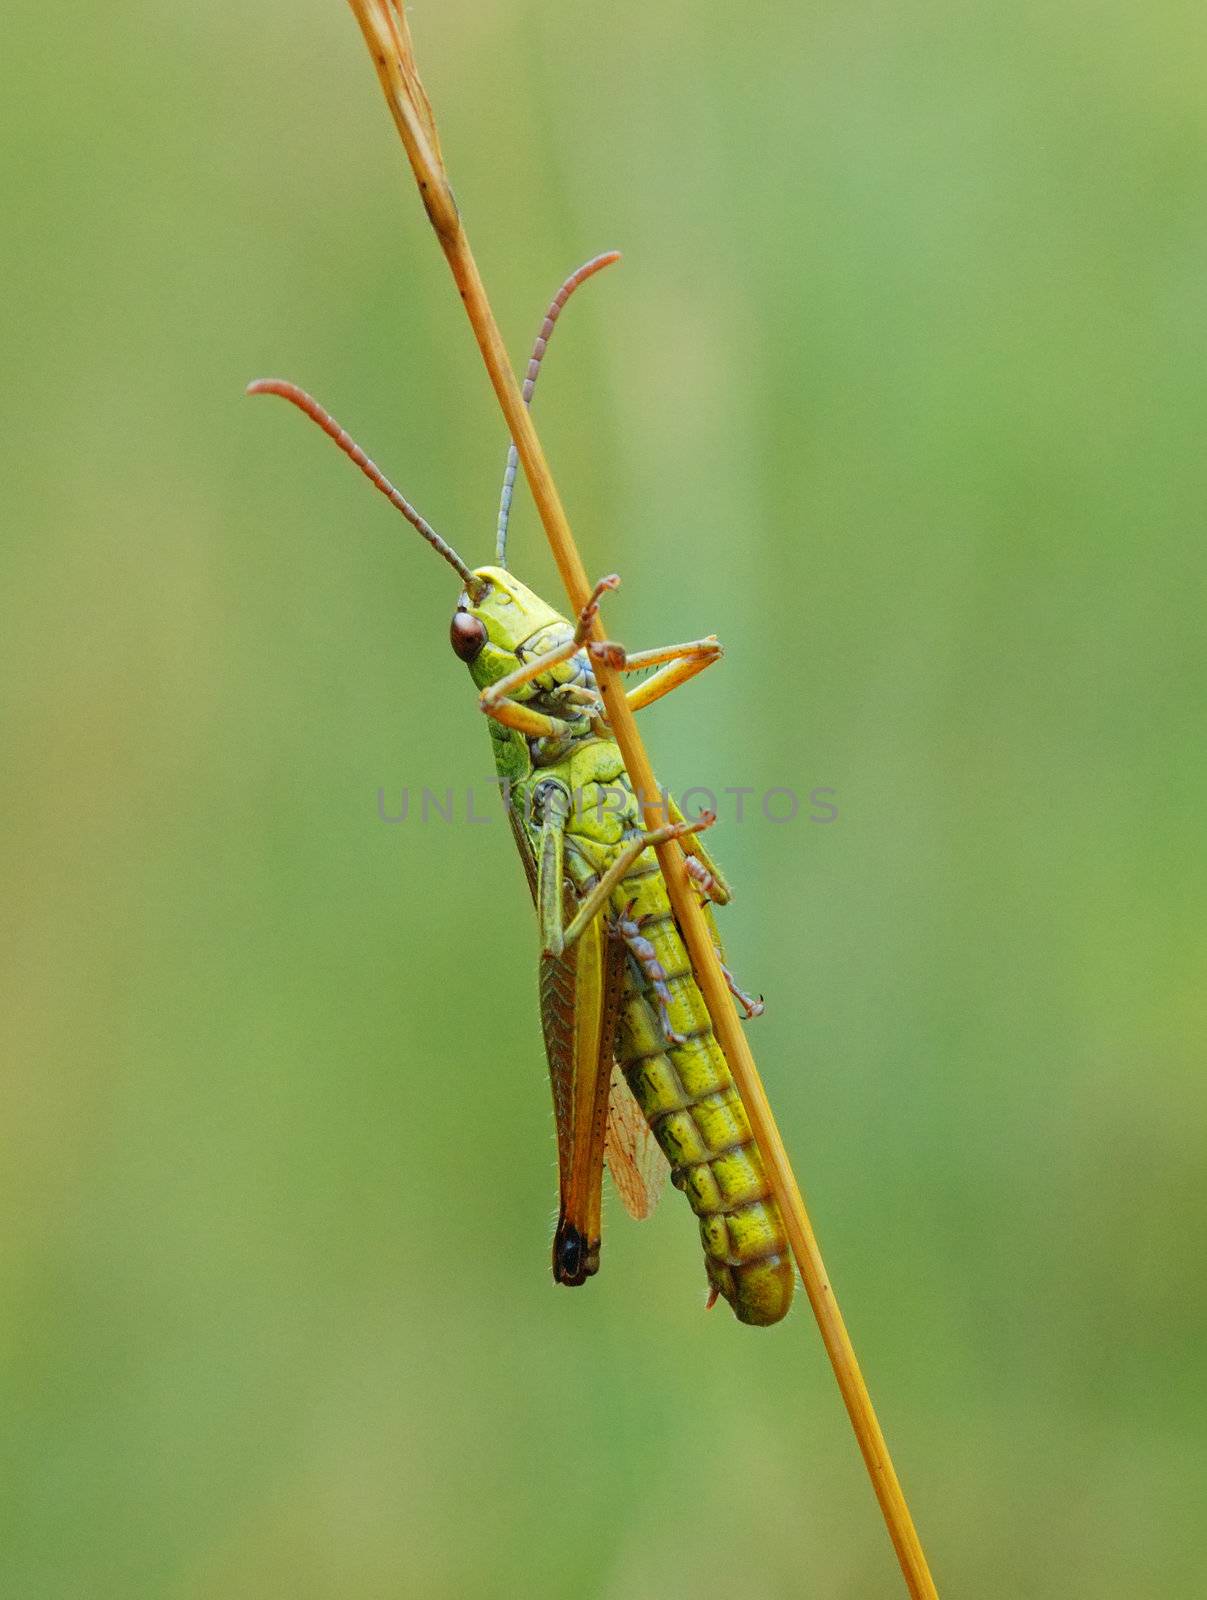 Grasshopper by maxkrasnov